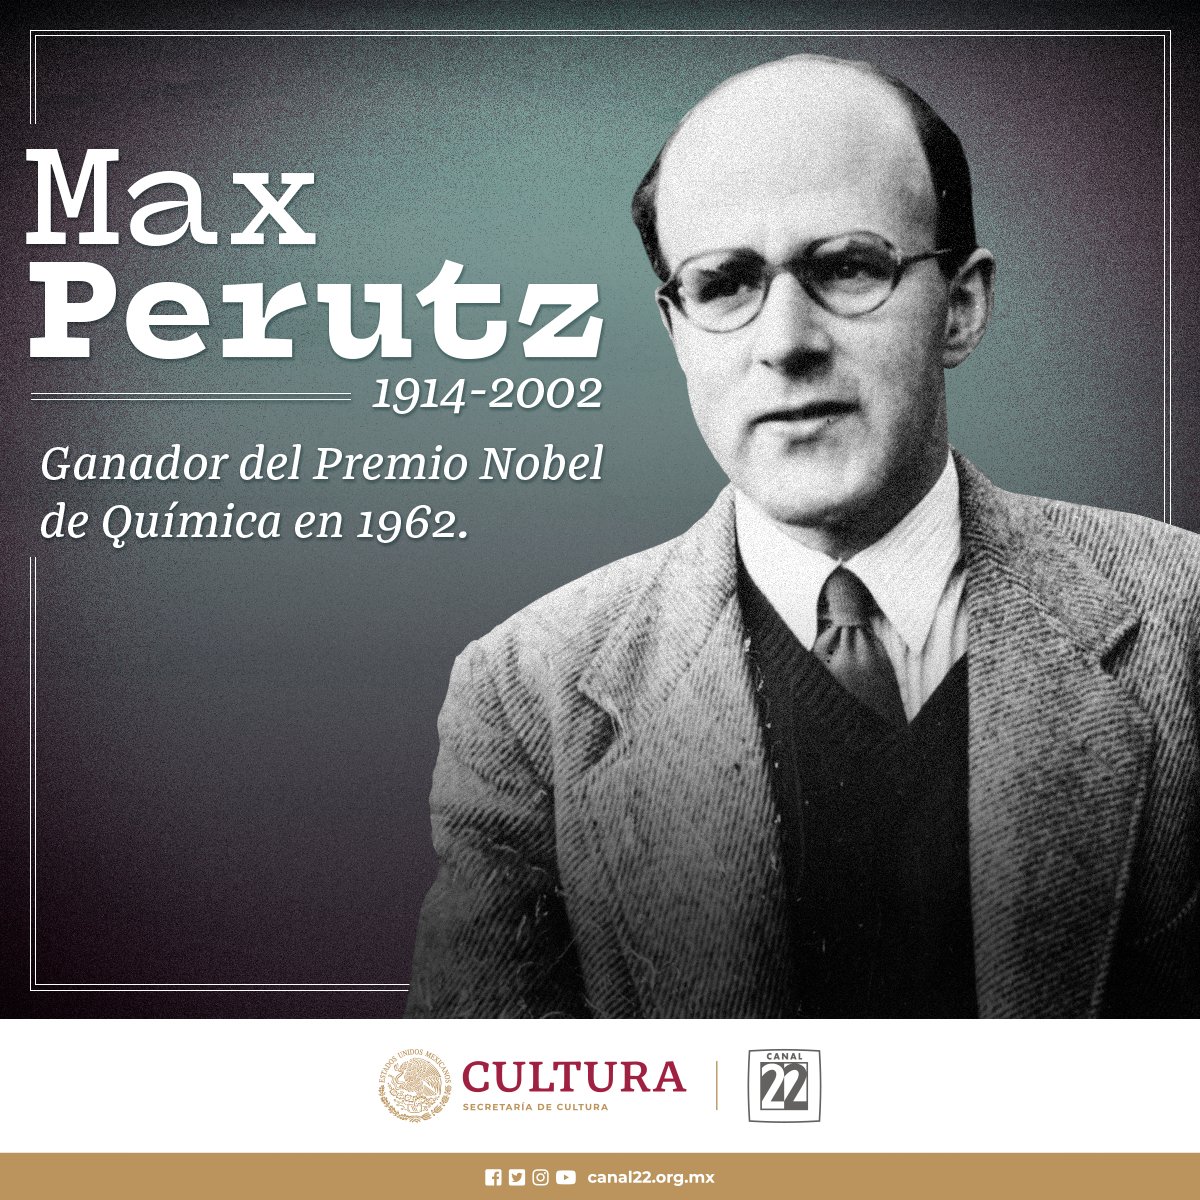 #El22Recuerda a Max Perutz, una de las grandes figuras de la biología molecular moderna. Su principal contribución fue solucionar la estructura de la hemoglobina, la molécula que transporta oxígeno en el torrente sanguíneo. Ganador del Premio Nobel de Química en 1962.